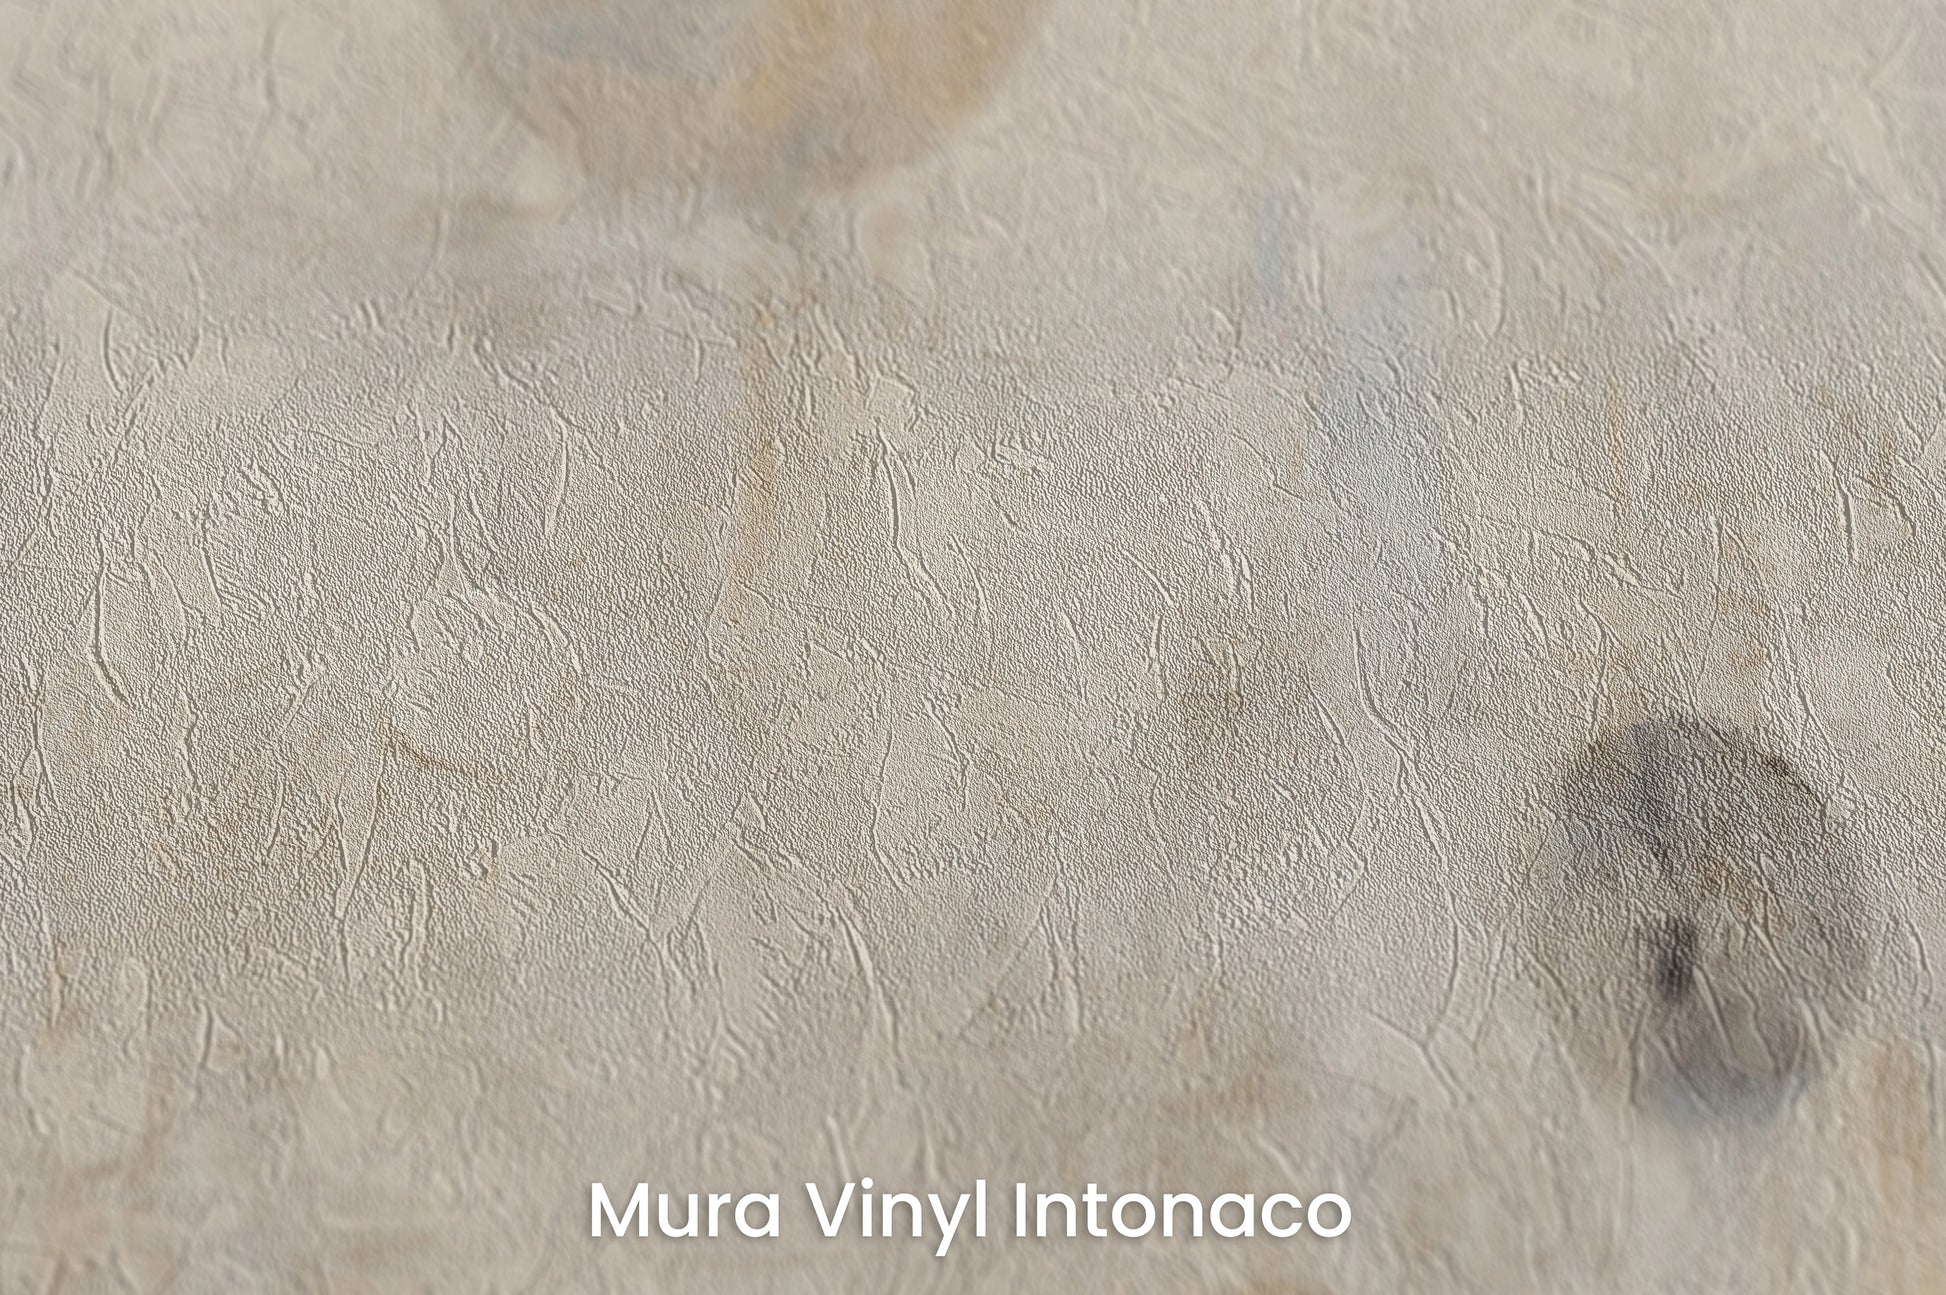 Zbliżenie na artystyczną fototapetę o nazwie WHISPERING ORBITAL SHADOWS na podłożu Mura Vinyl Intonaco - struktura tartego tynku.